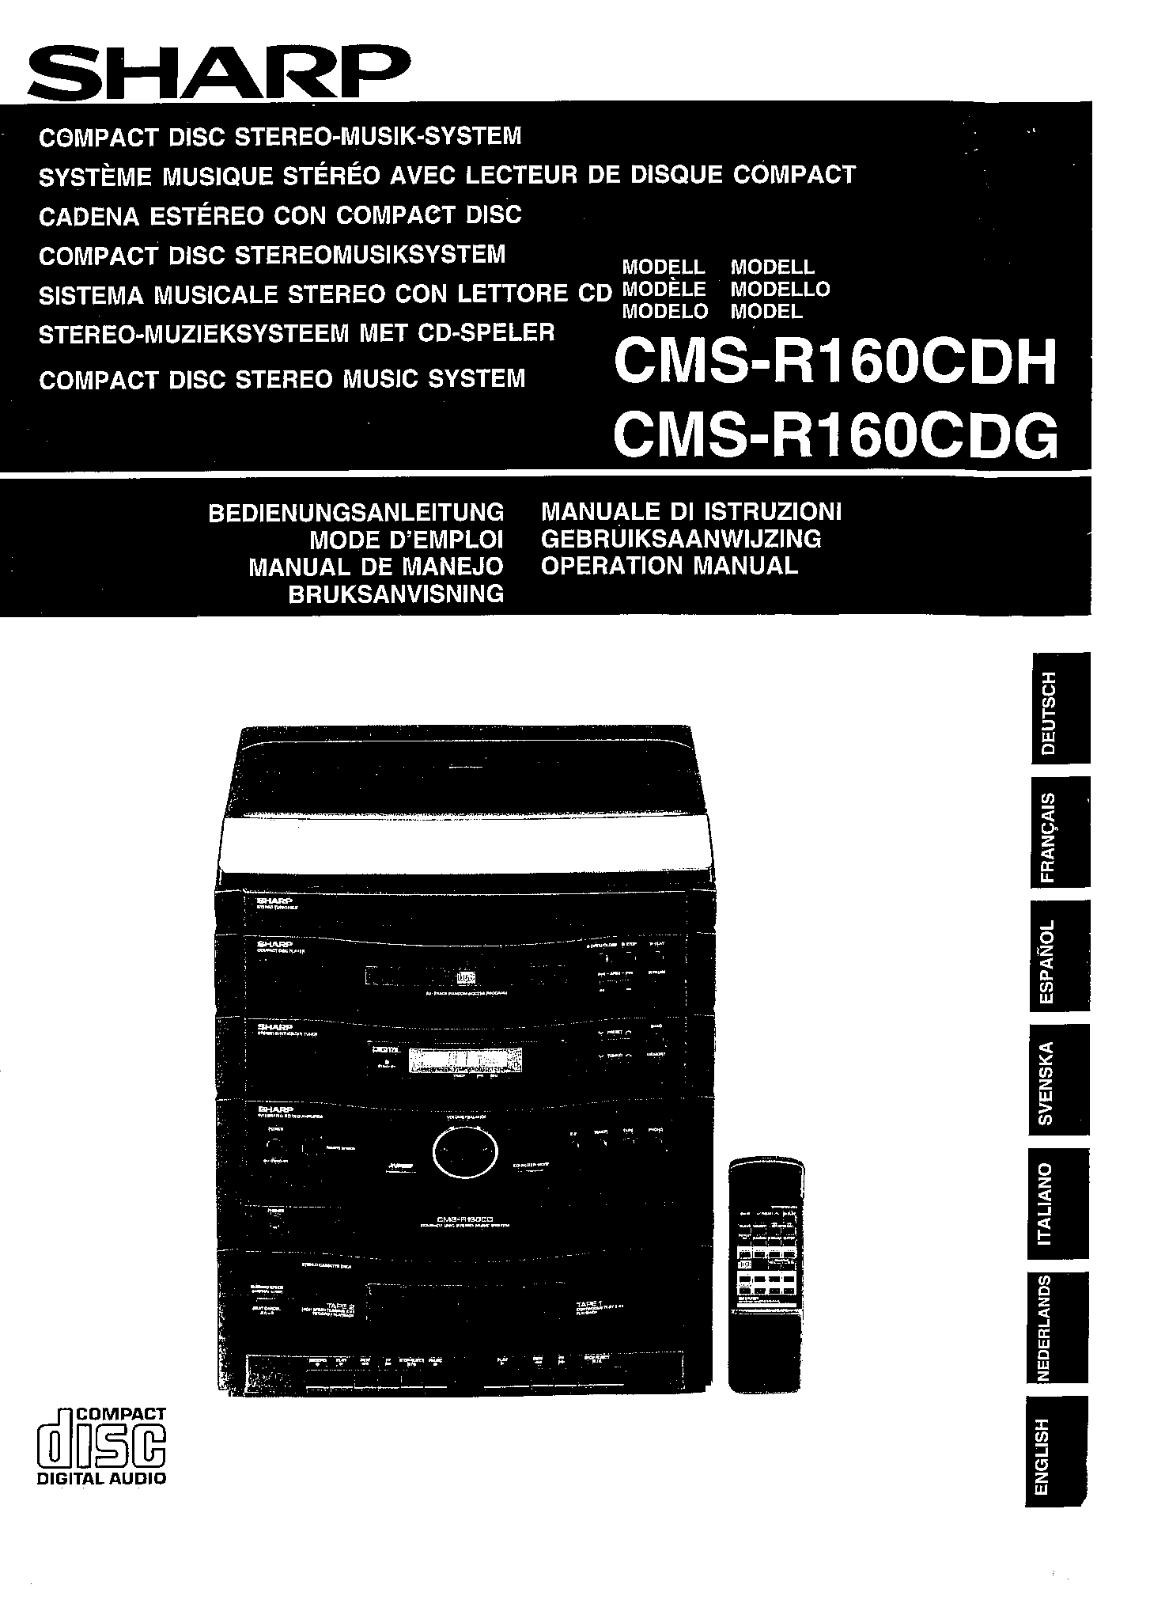 Sharp CMS-R160CDH, CMS-R160CDG User Manual